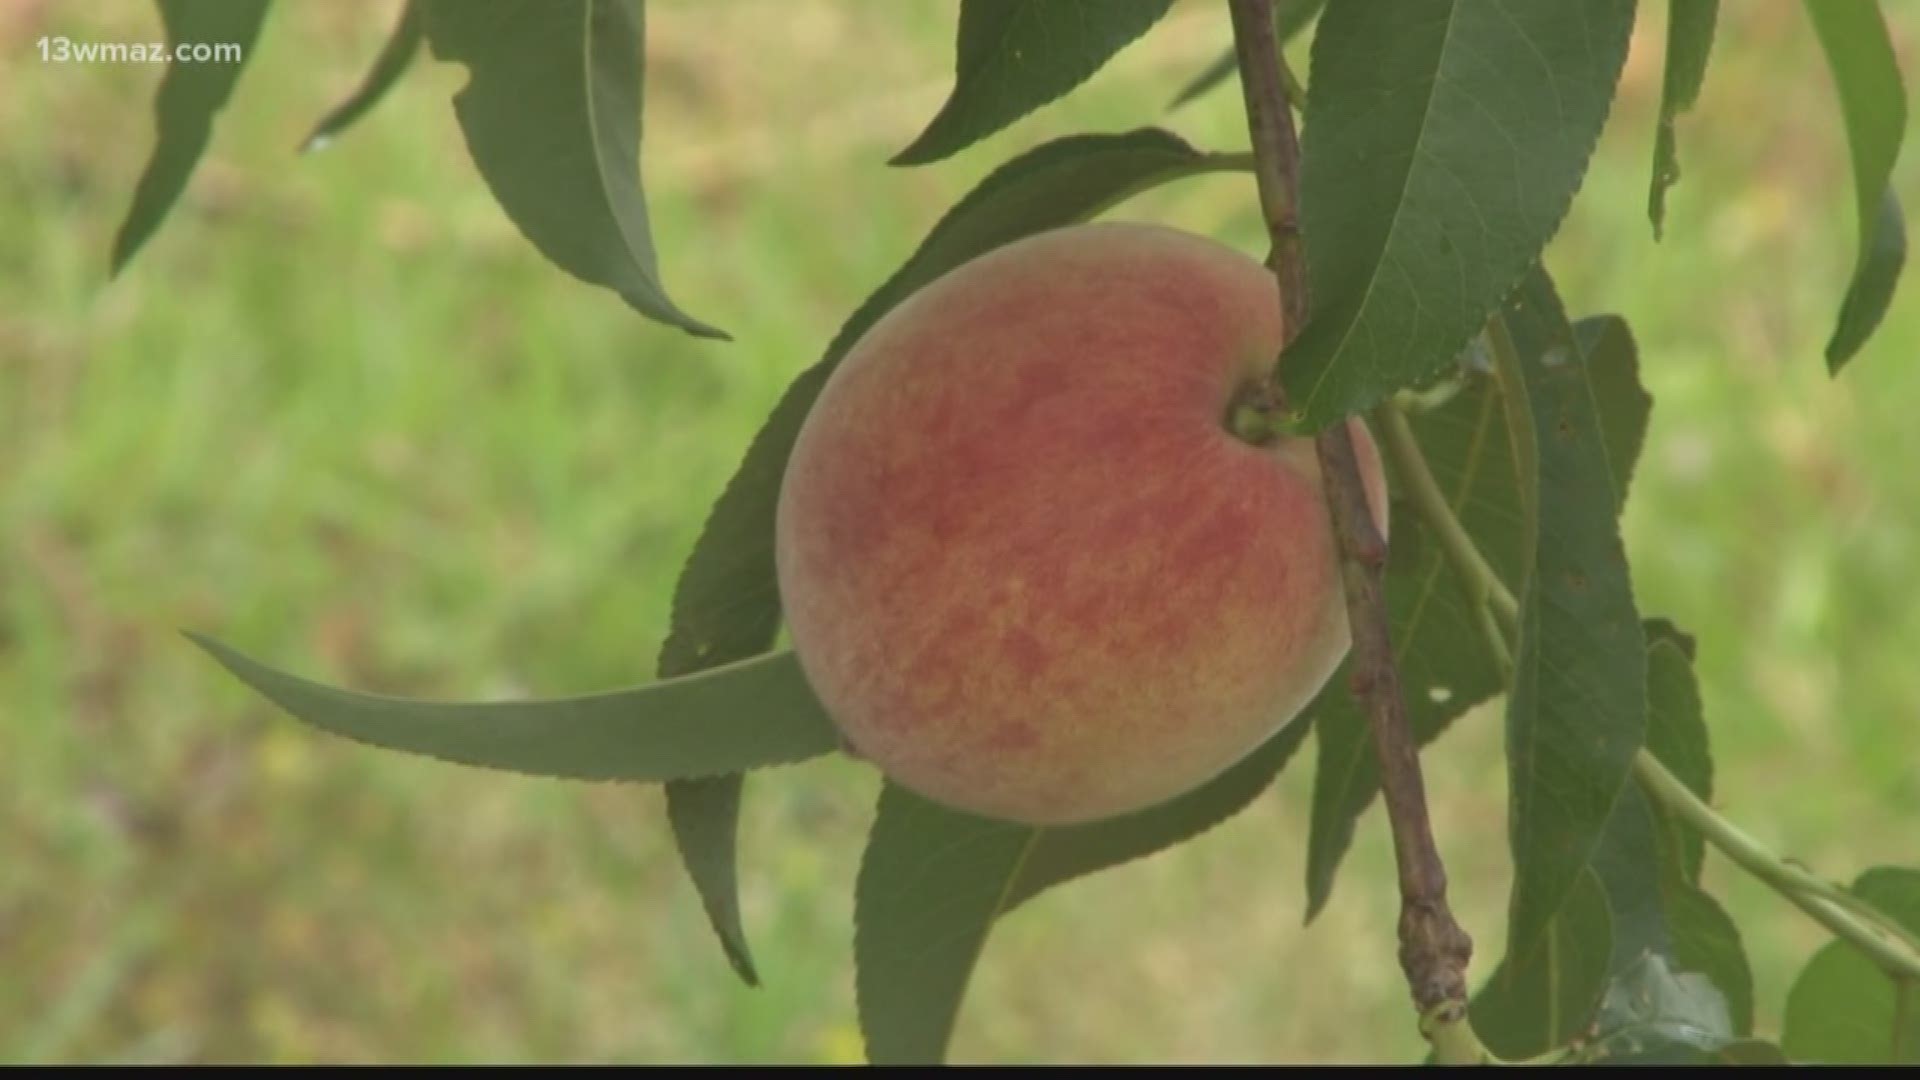 peach season begins